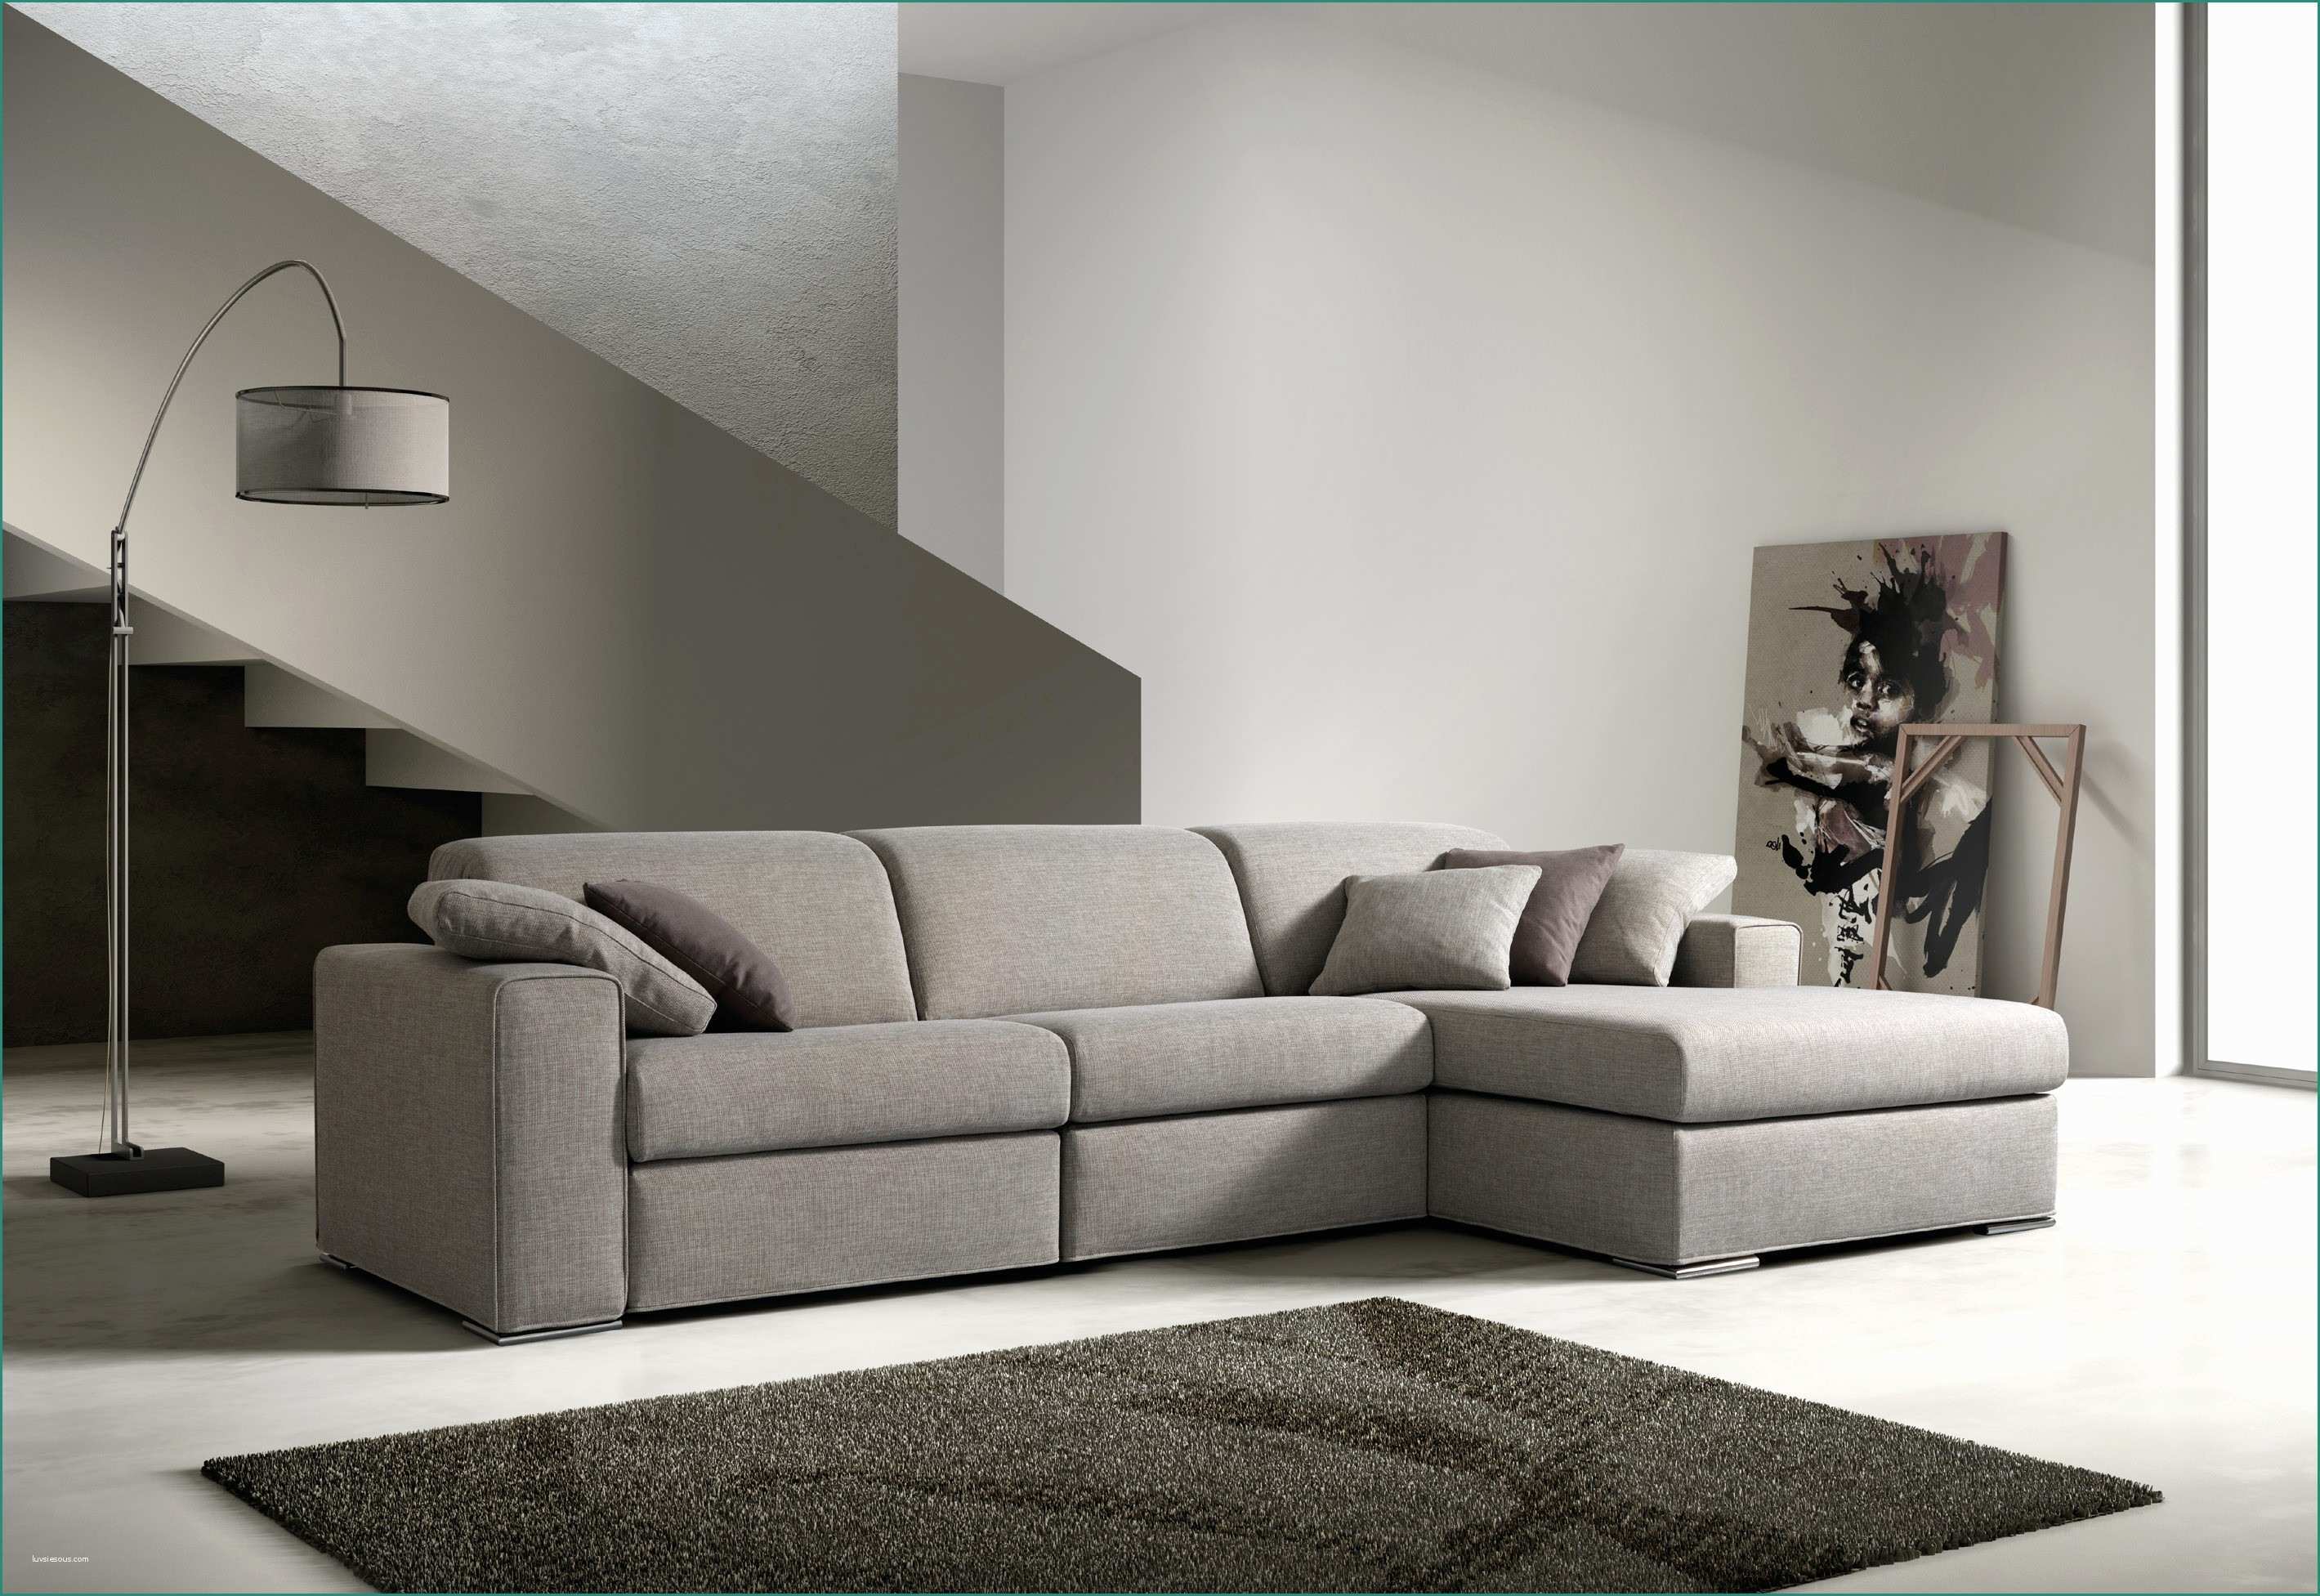 Divani In Promozione E Tanghetti Divani House solutions Pinterest Furniture Upholstery